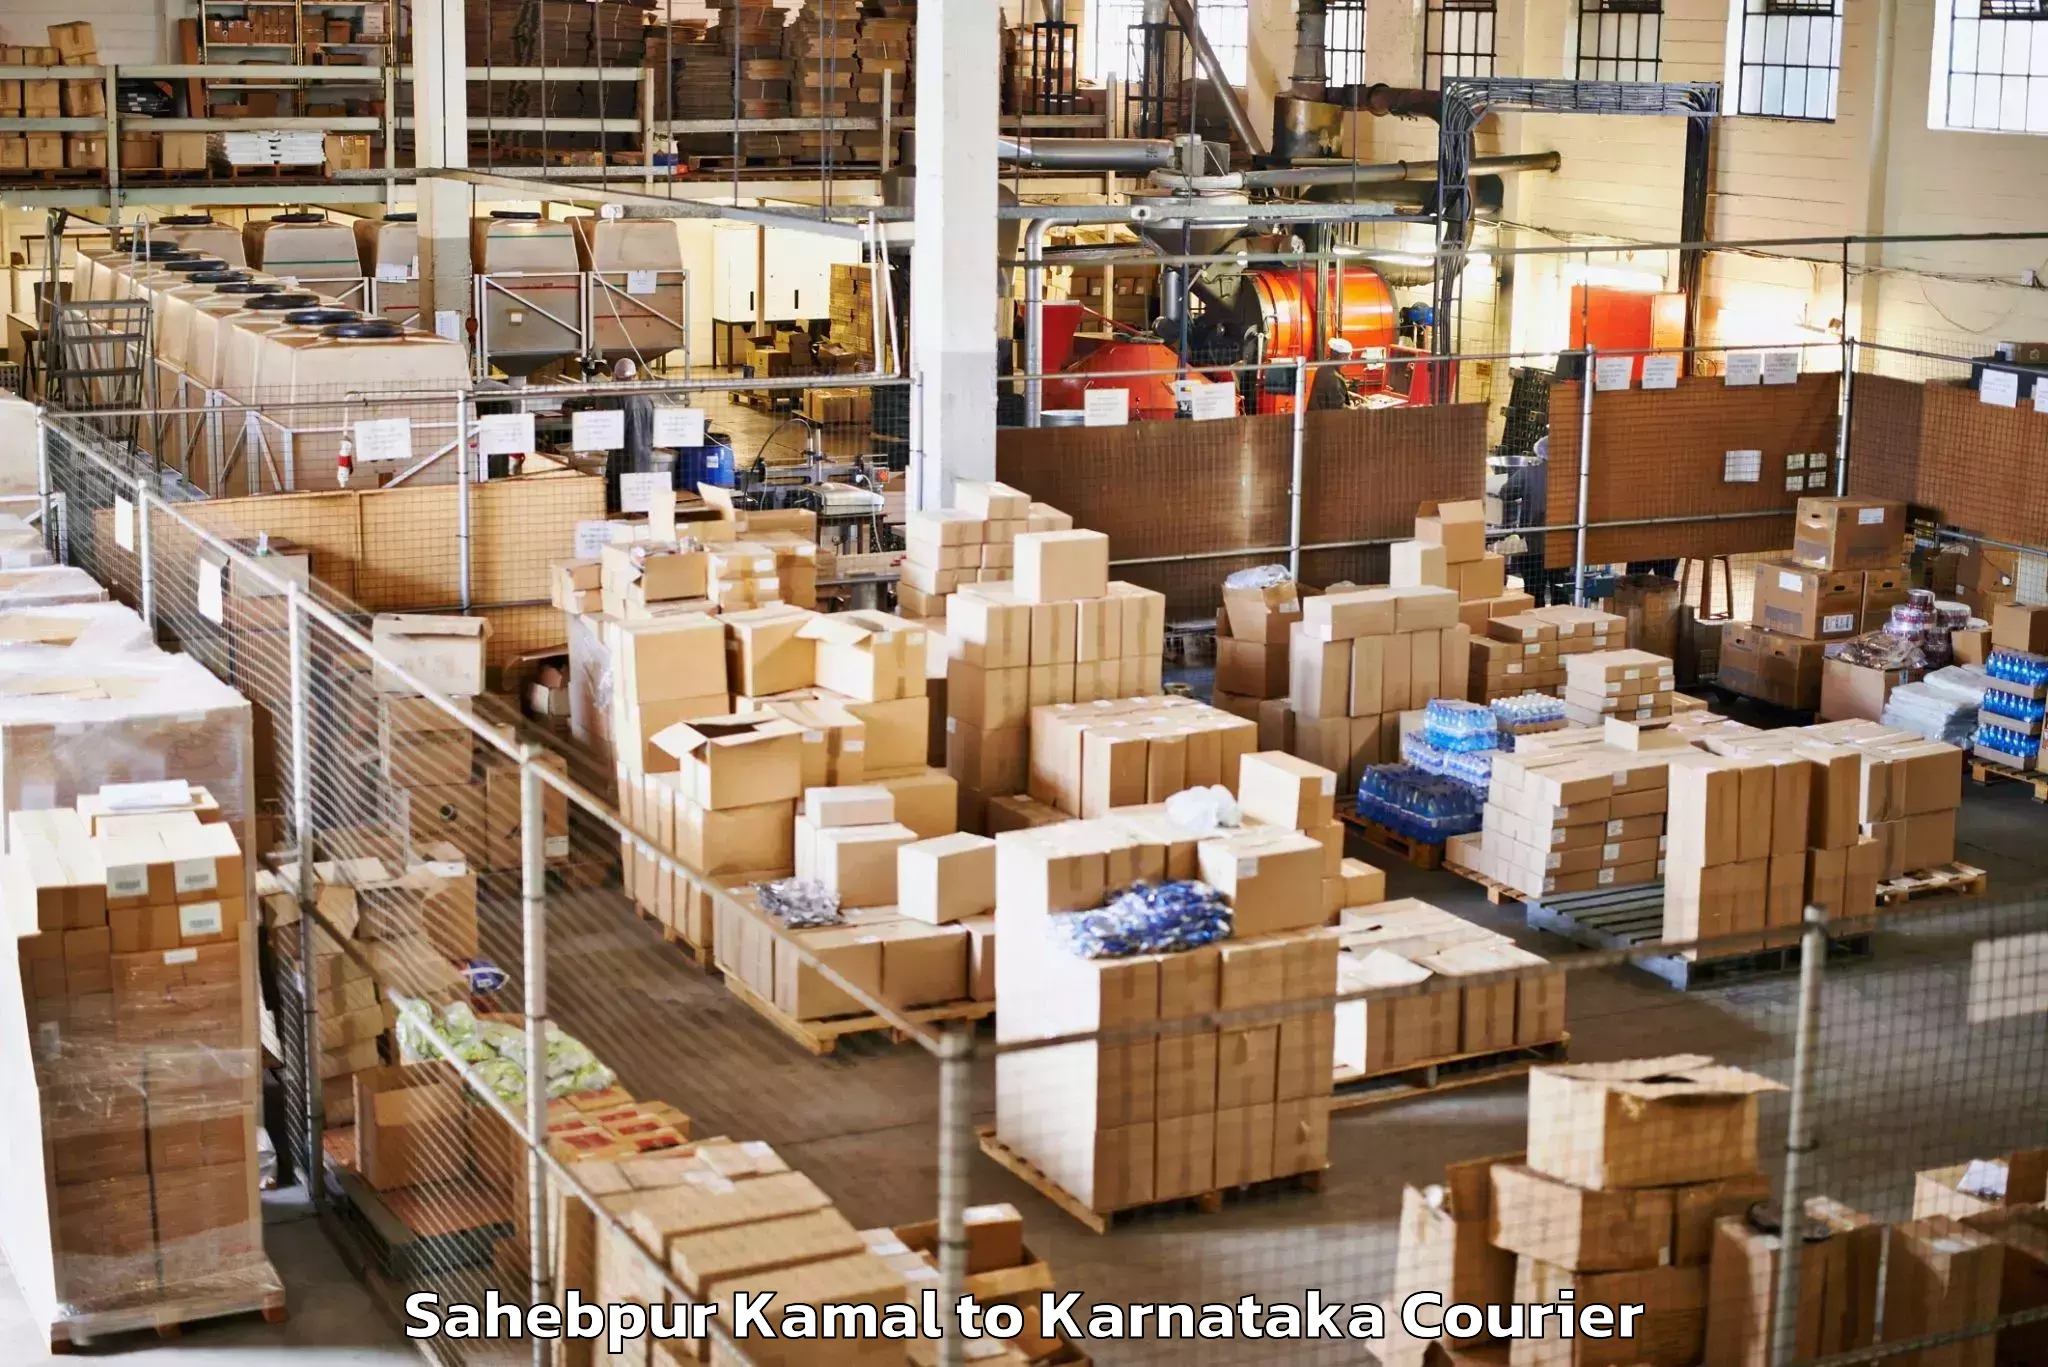 Reliable luggage courier Sahebpur Kamal to Dharmasthala